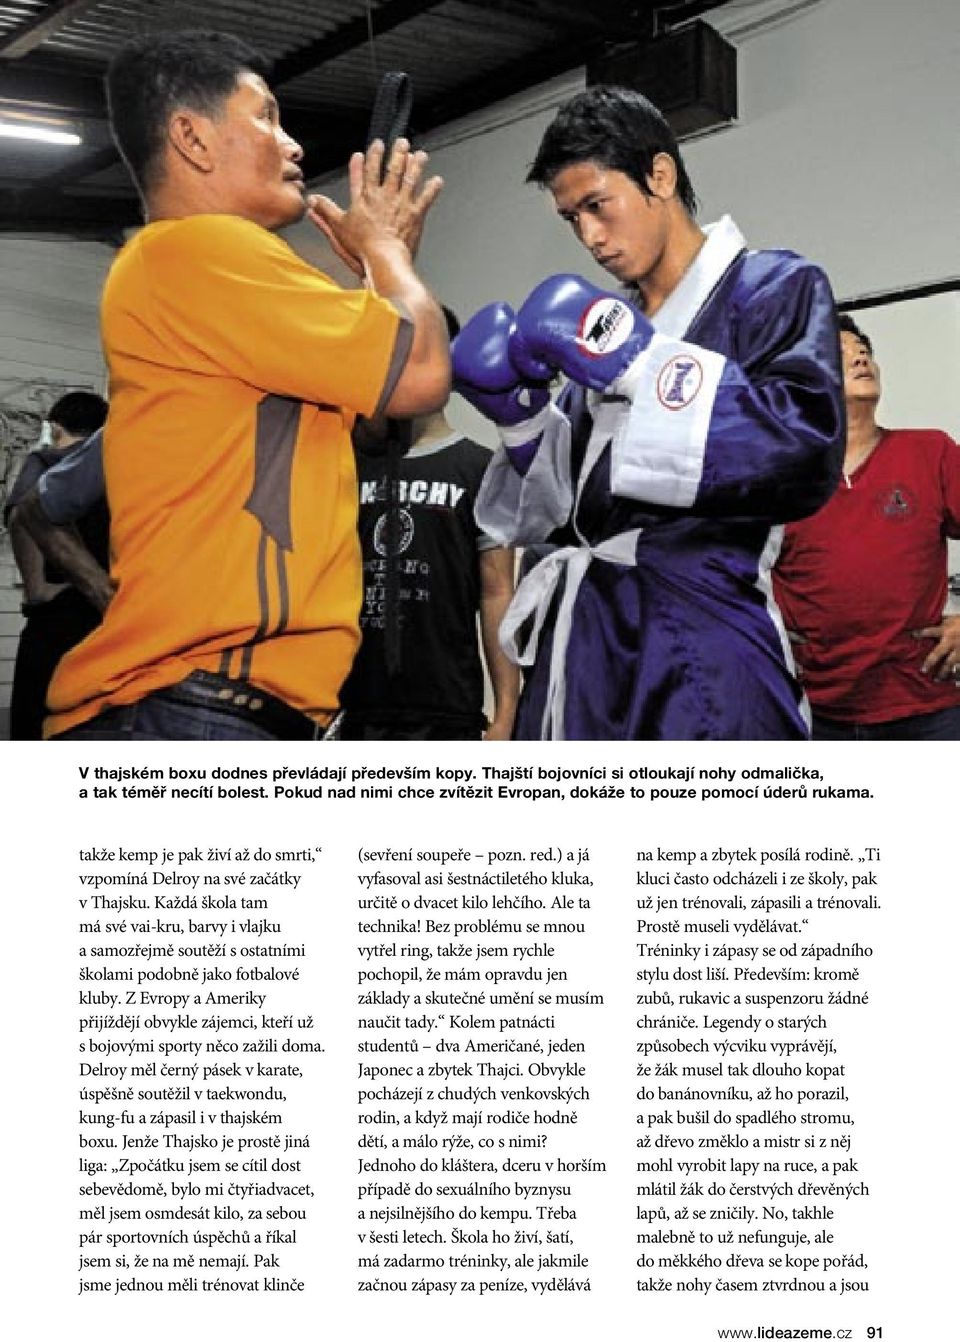 Z Evropy a Ameriky přijíždějí obvykle zájemci, kteří už s bojovými sporty něco zažili doma. Delroy měl černý pásek v karate, úspěšně soutěžil v taekwondu, kung-fu a zápasil i v thajském boxu.